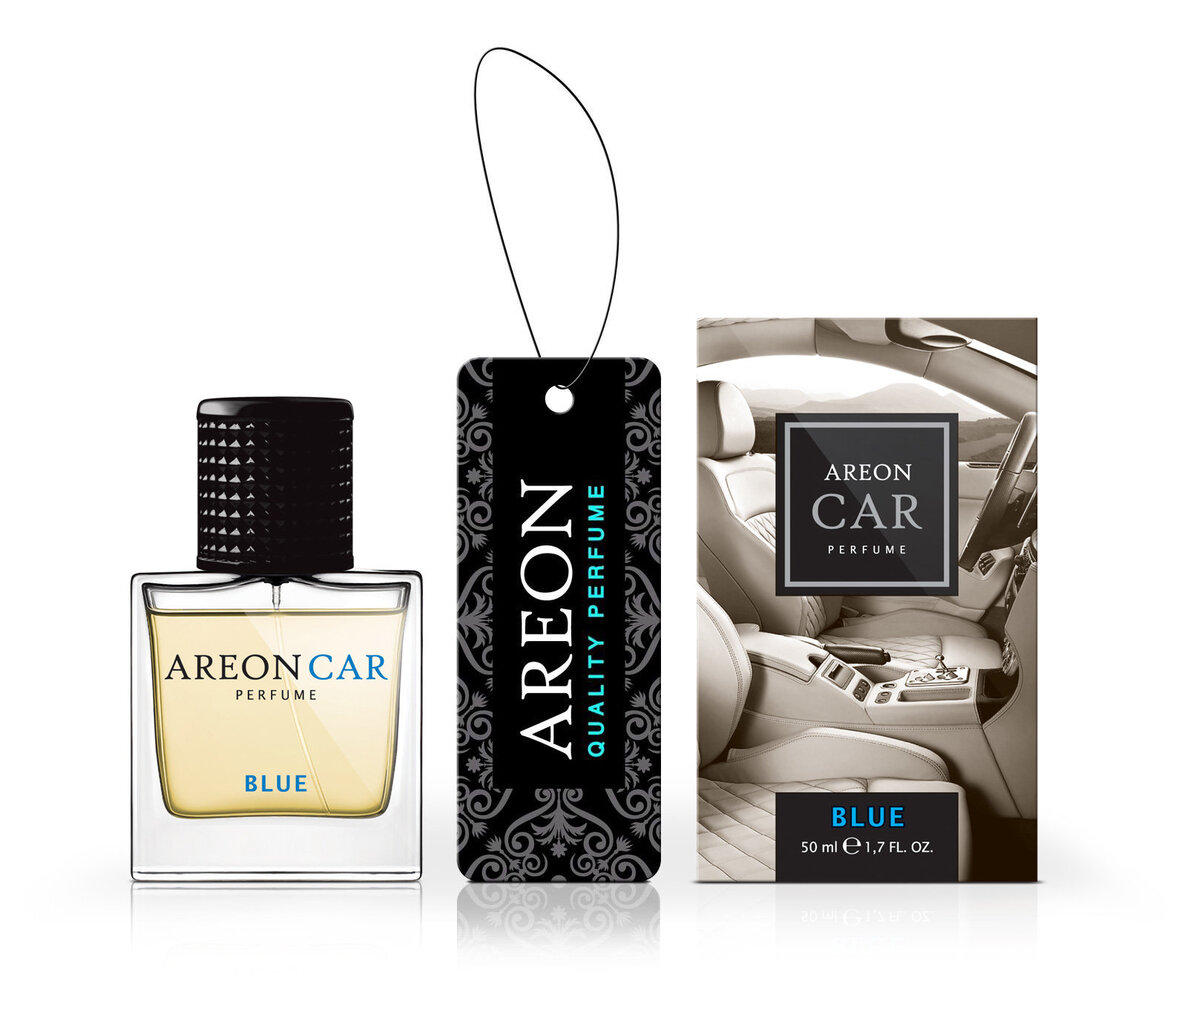 Oro gaiviklis Areon Car Perfume 50ml - Blue kaina ir informacija | Salono oro gaivikliai | pigu.lt